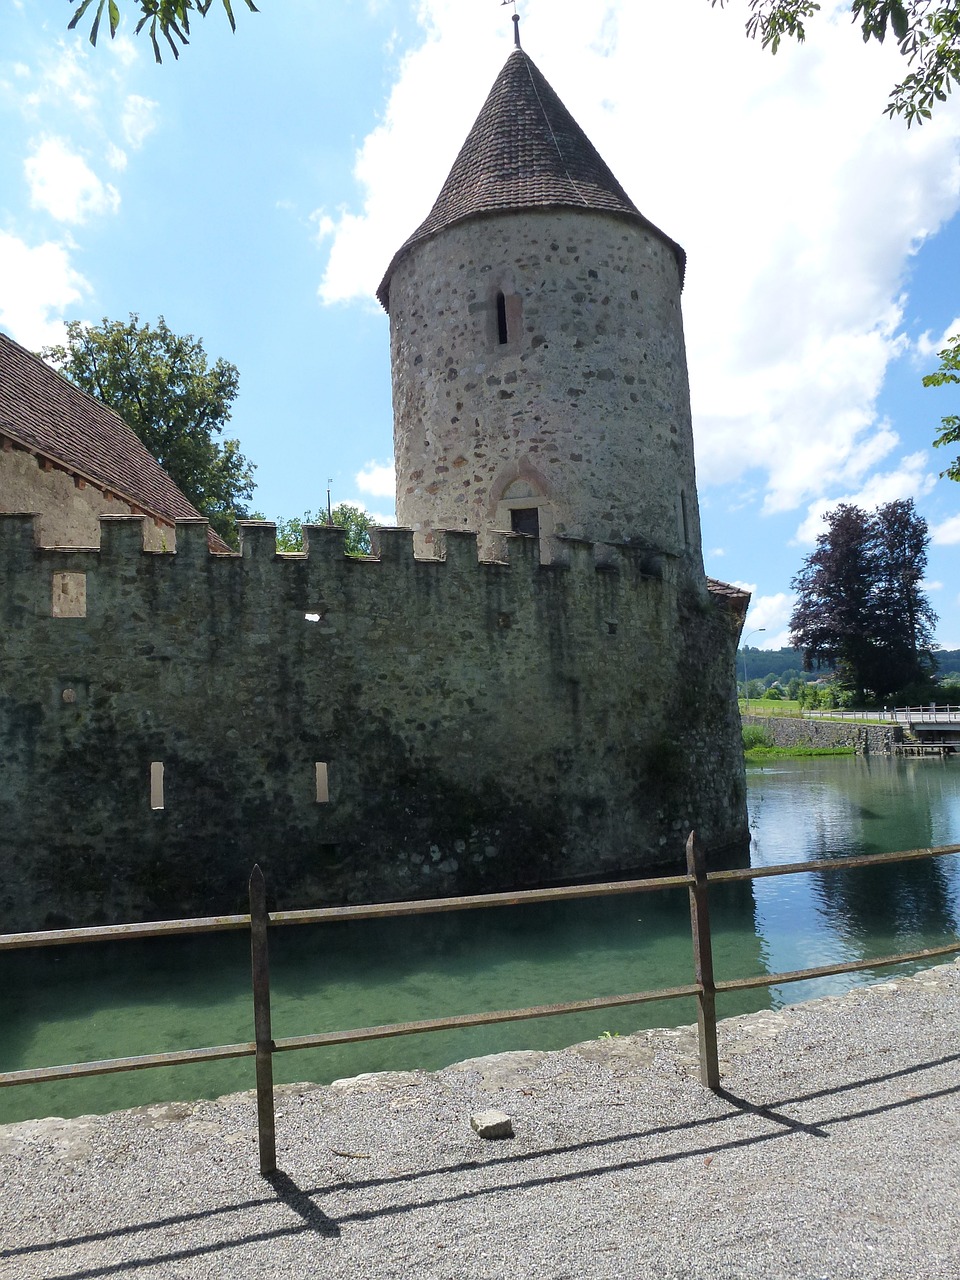 aargau switzerland castle free photo